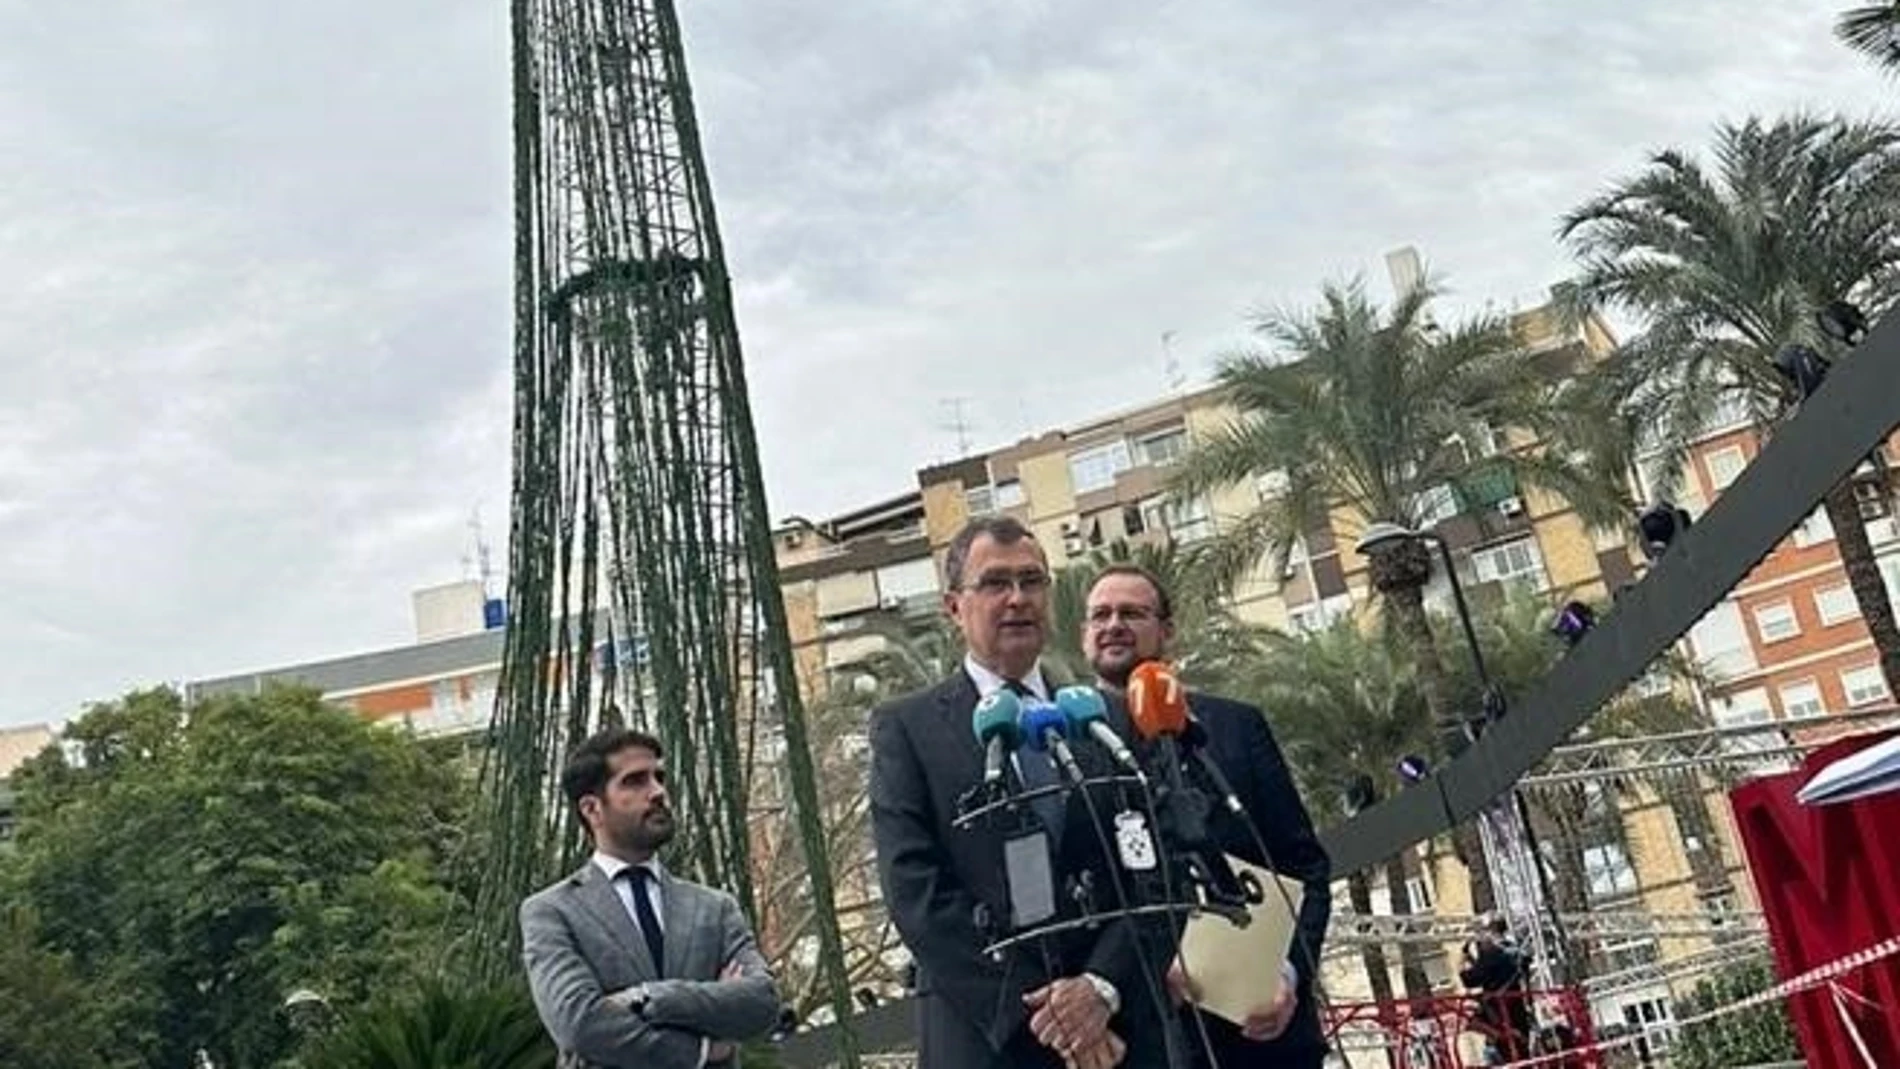 Tenis.- Carlos Alcaraz encenderá el gran árbol de Navidad de Murcia